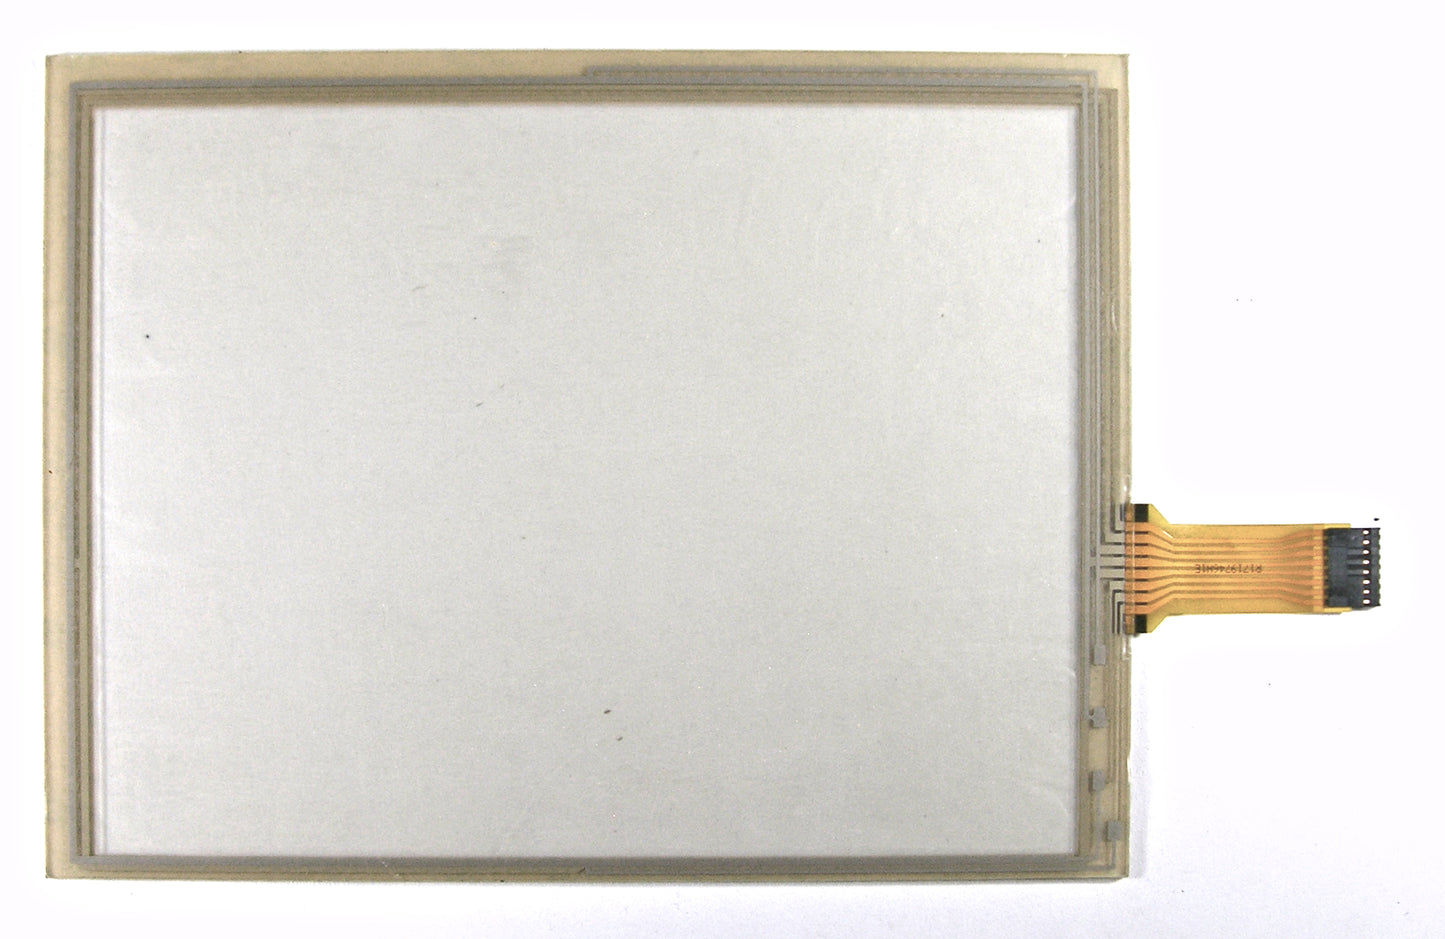 EZ1210L-W8R, 12.1" Diagonal 8-Wire Resistive Touch Screen Panel